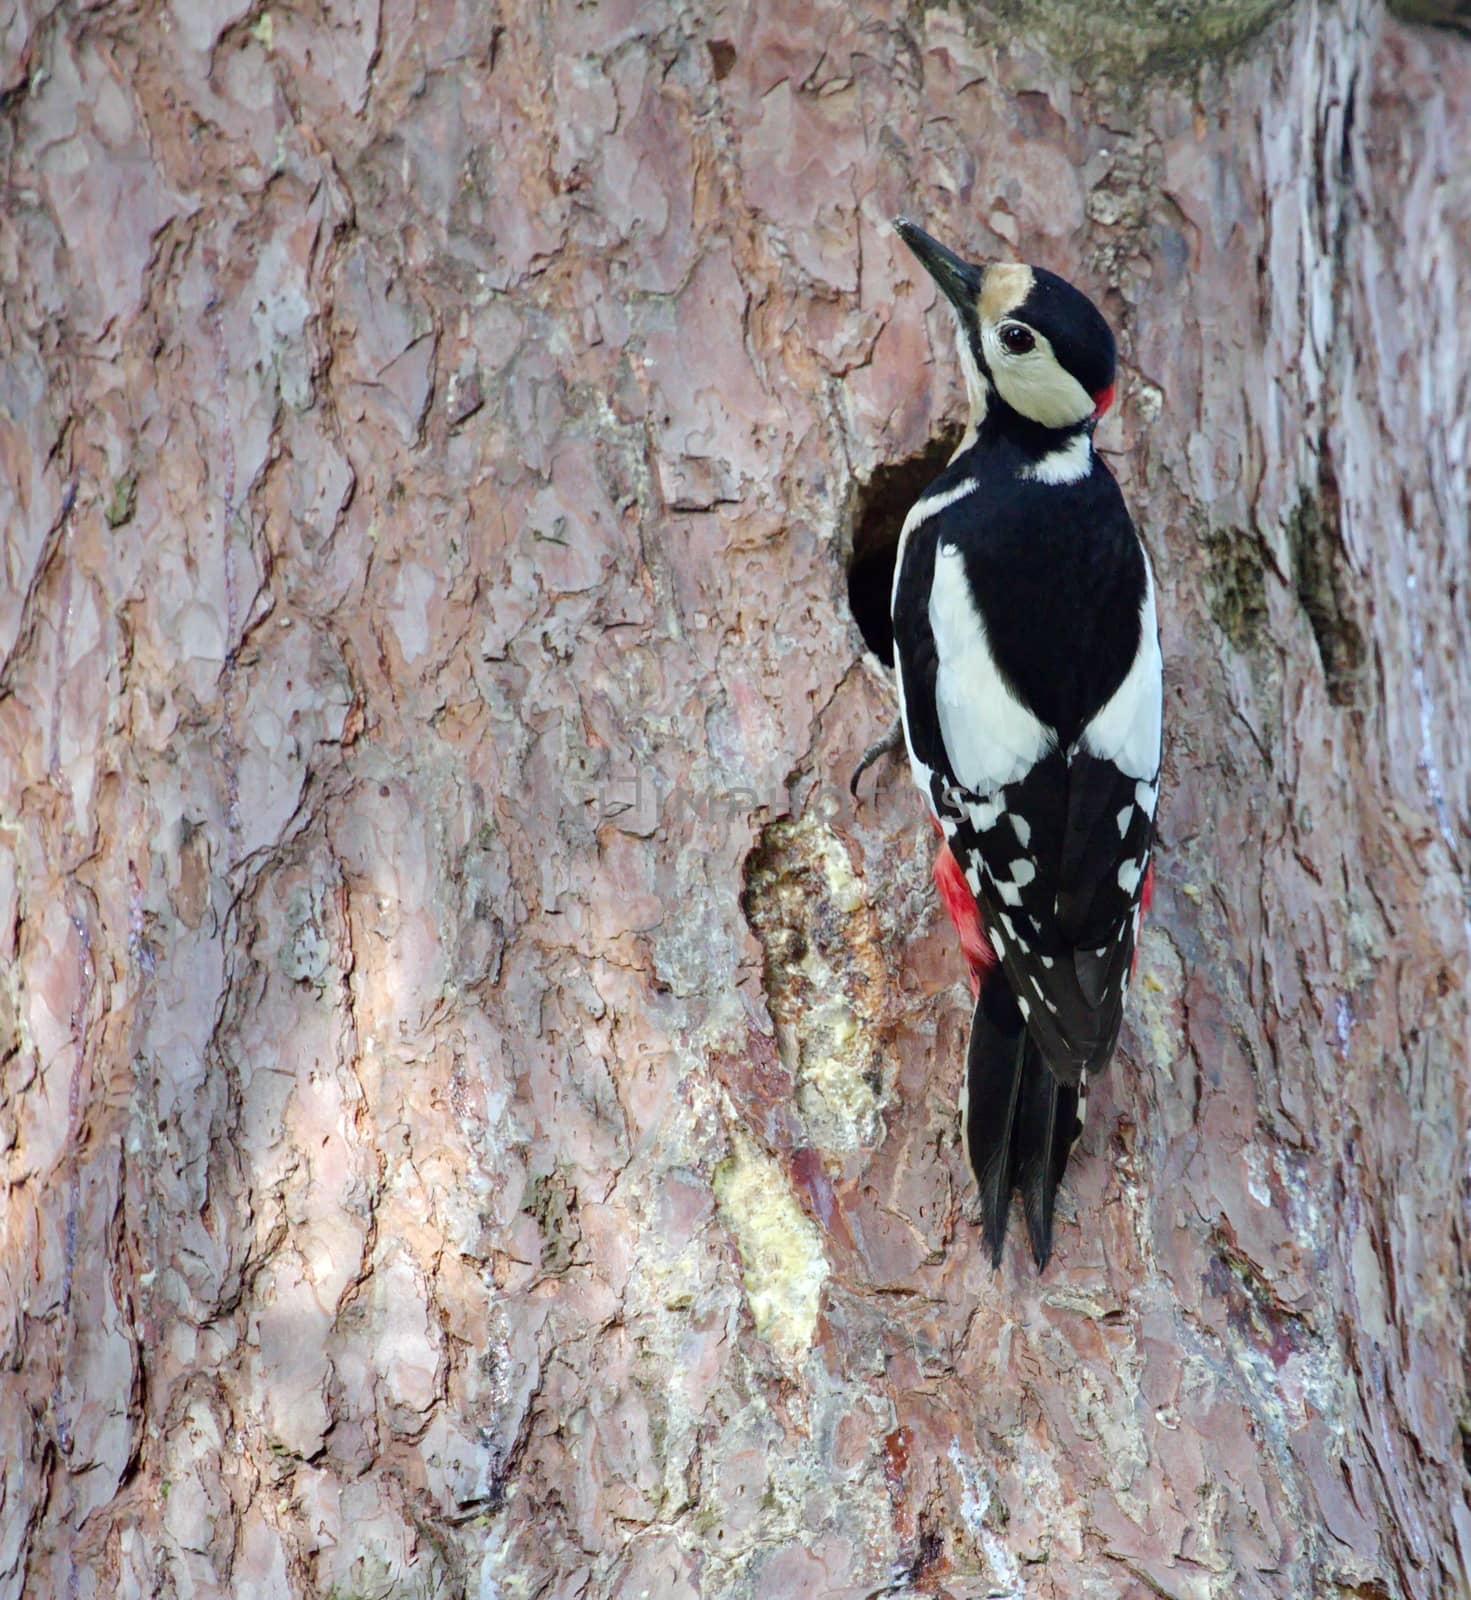 Hairy woodpecker male bird by Elenaphotos21